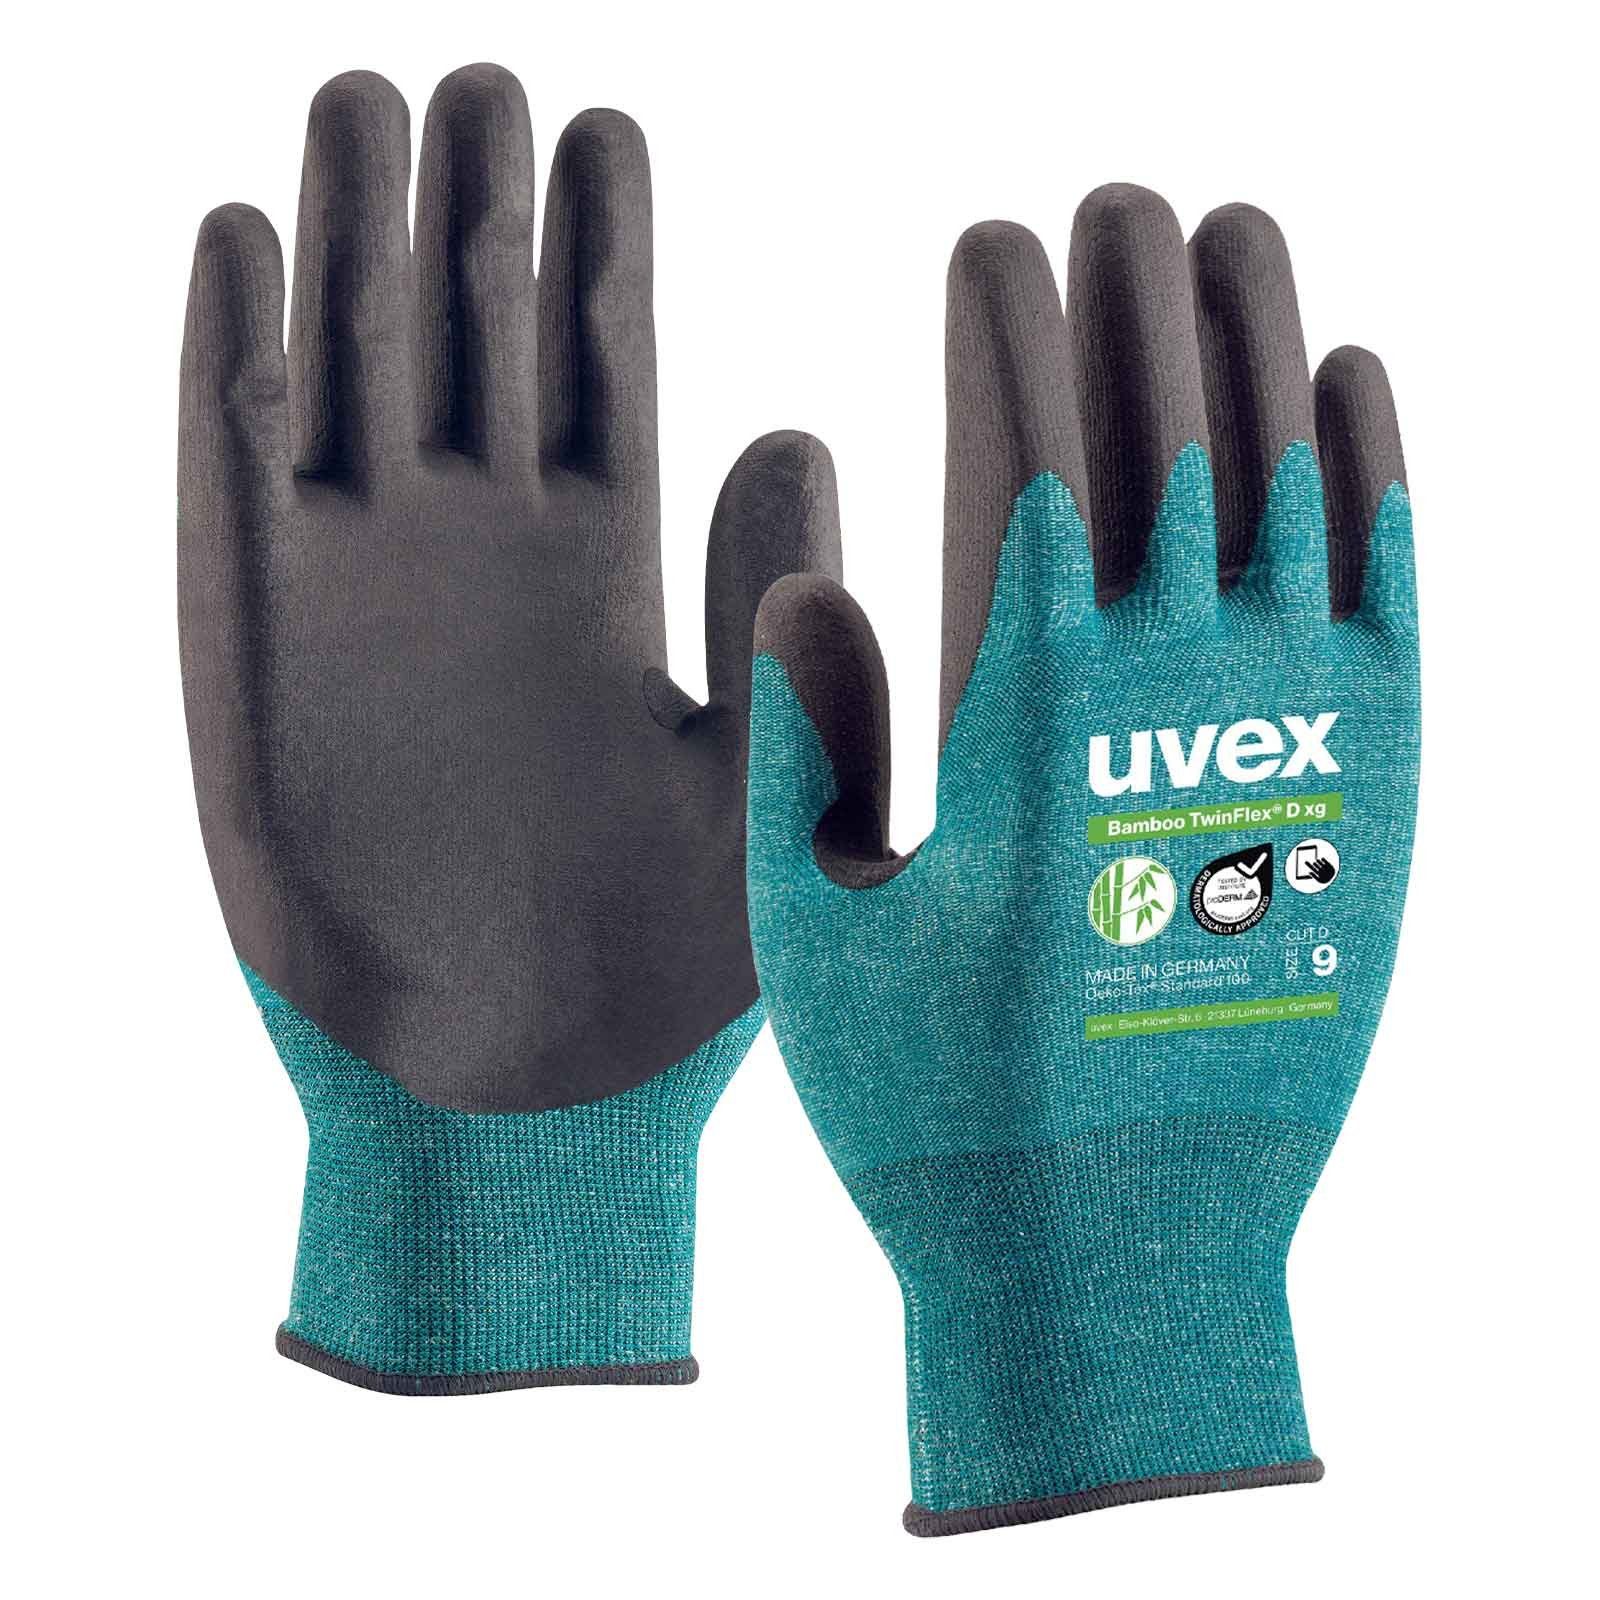 Uvex Mechaniker-Handschuhe Schnittschutzhandschuhe Bamboo TwinFlex D xg 60090 Touchscreen (Spar-Set)